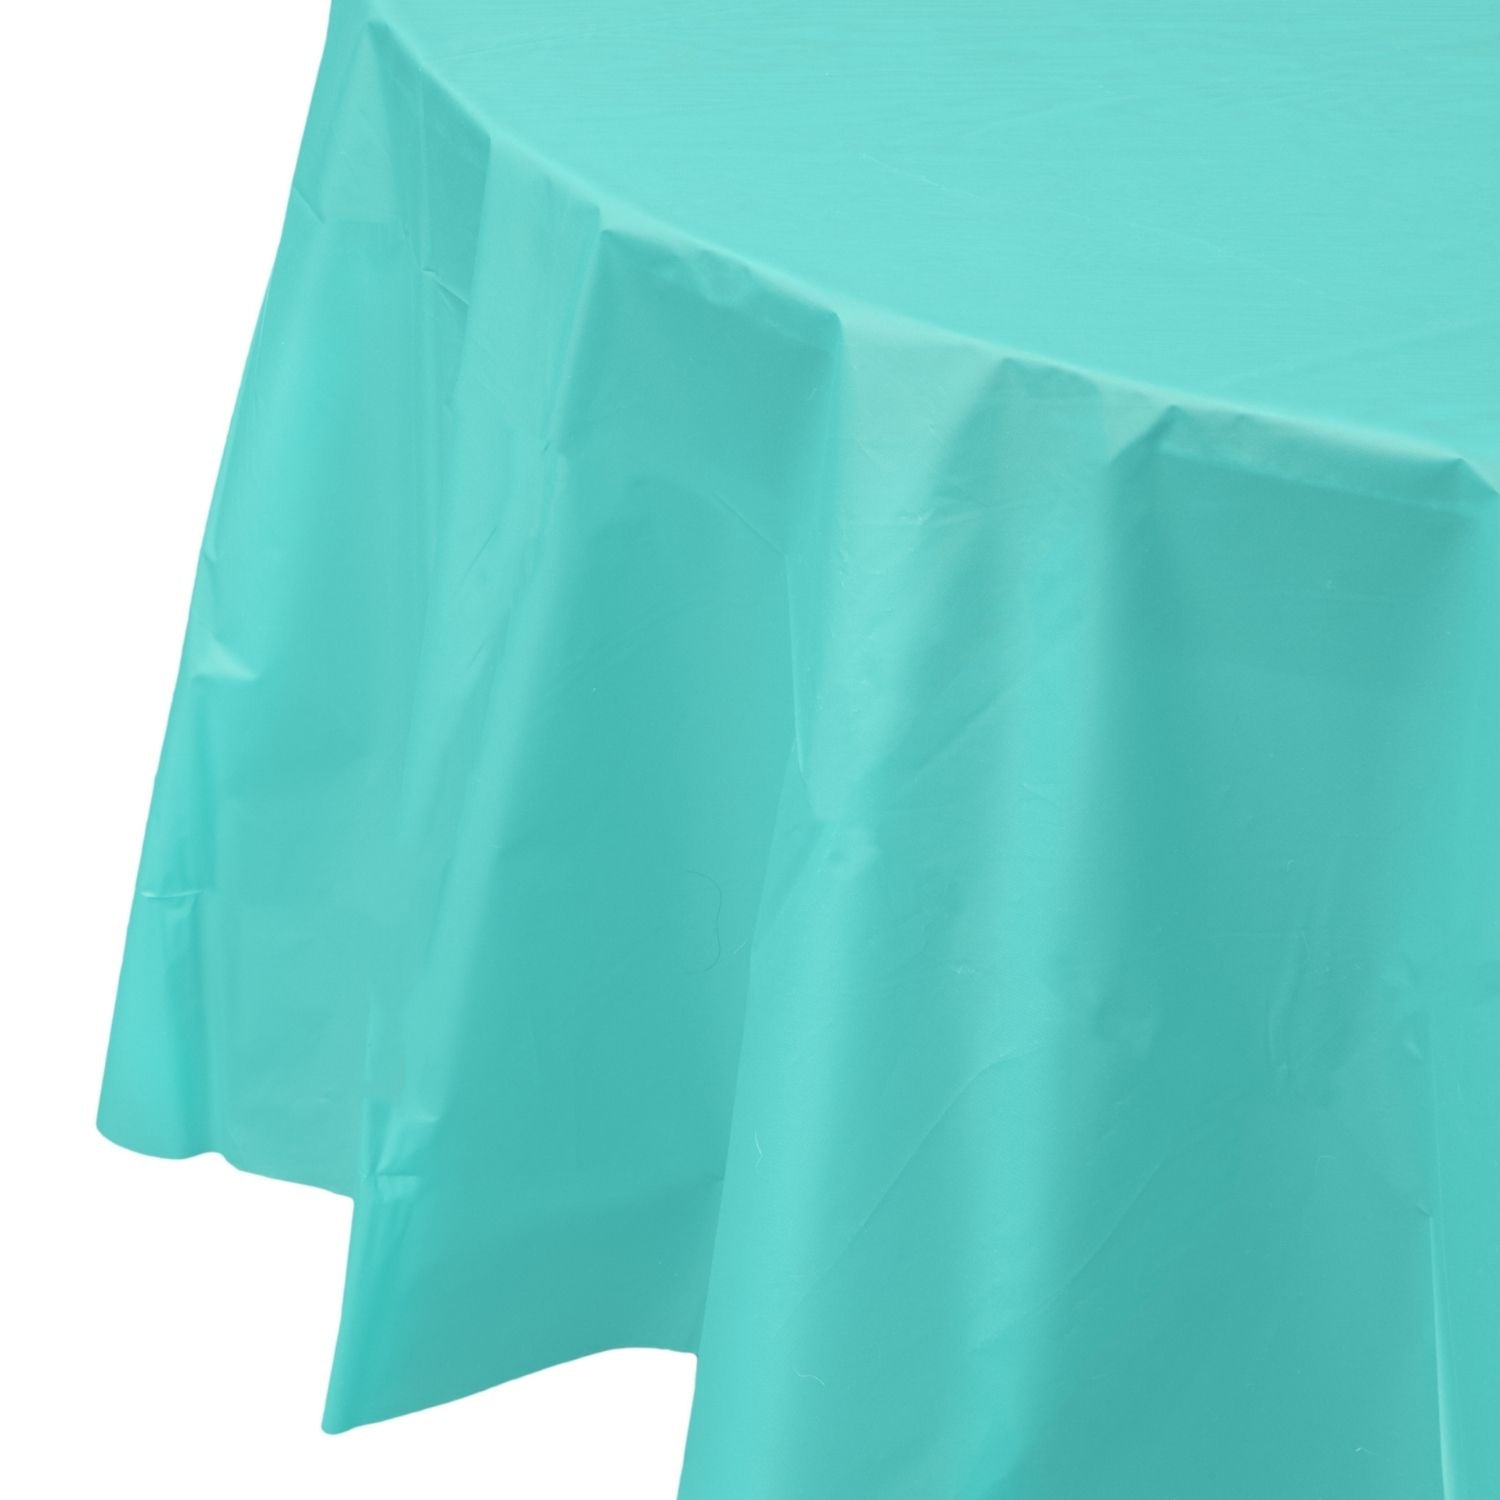 Premium Round Aqua Plastic Tablecloth | 96 Count